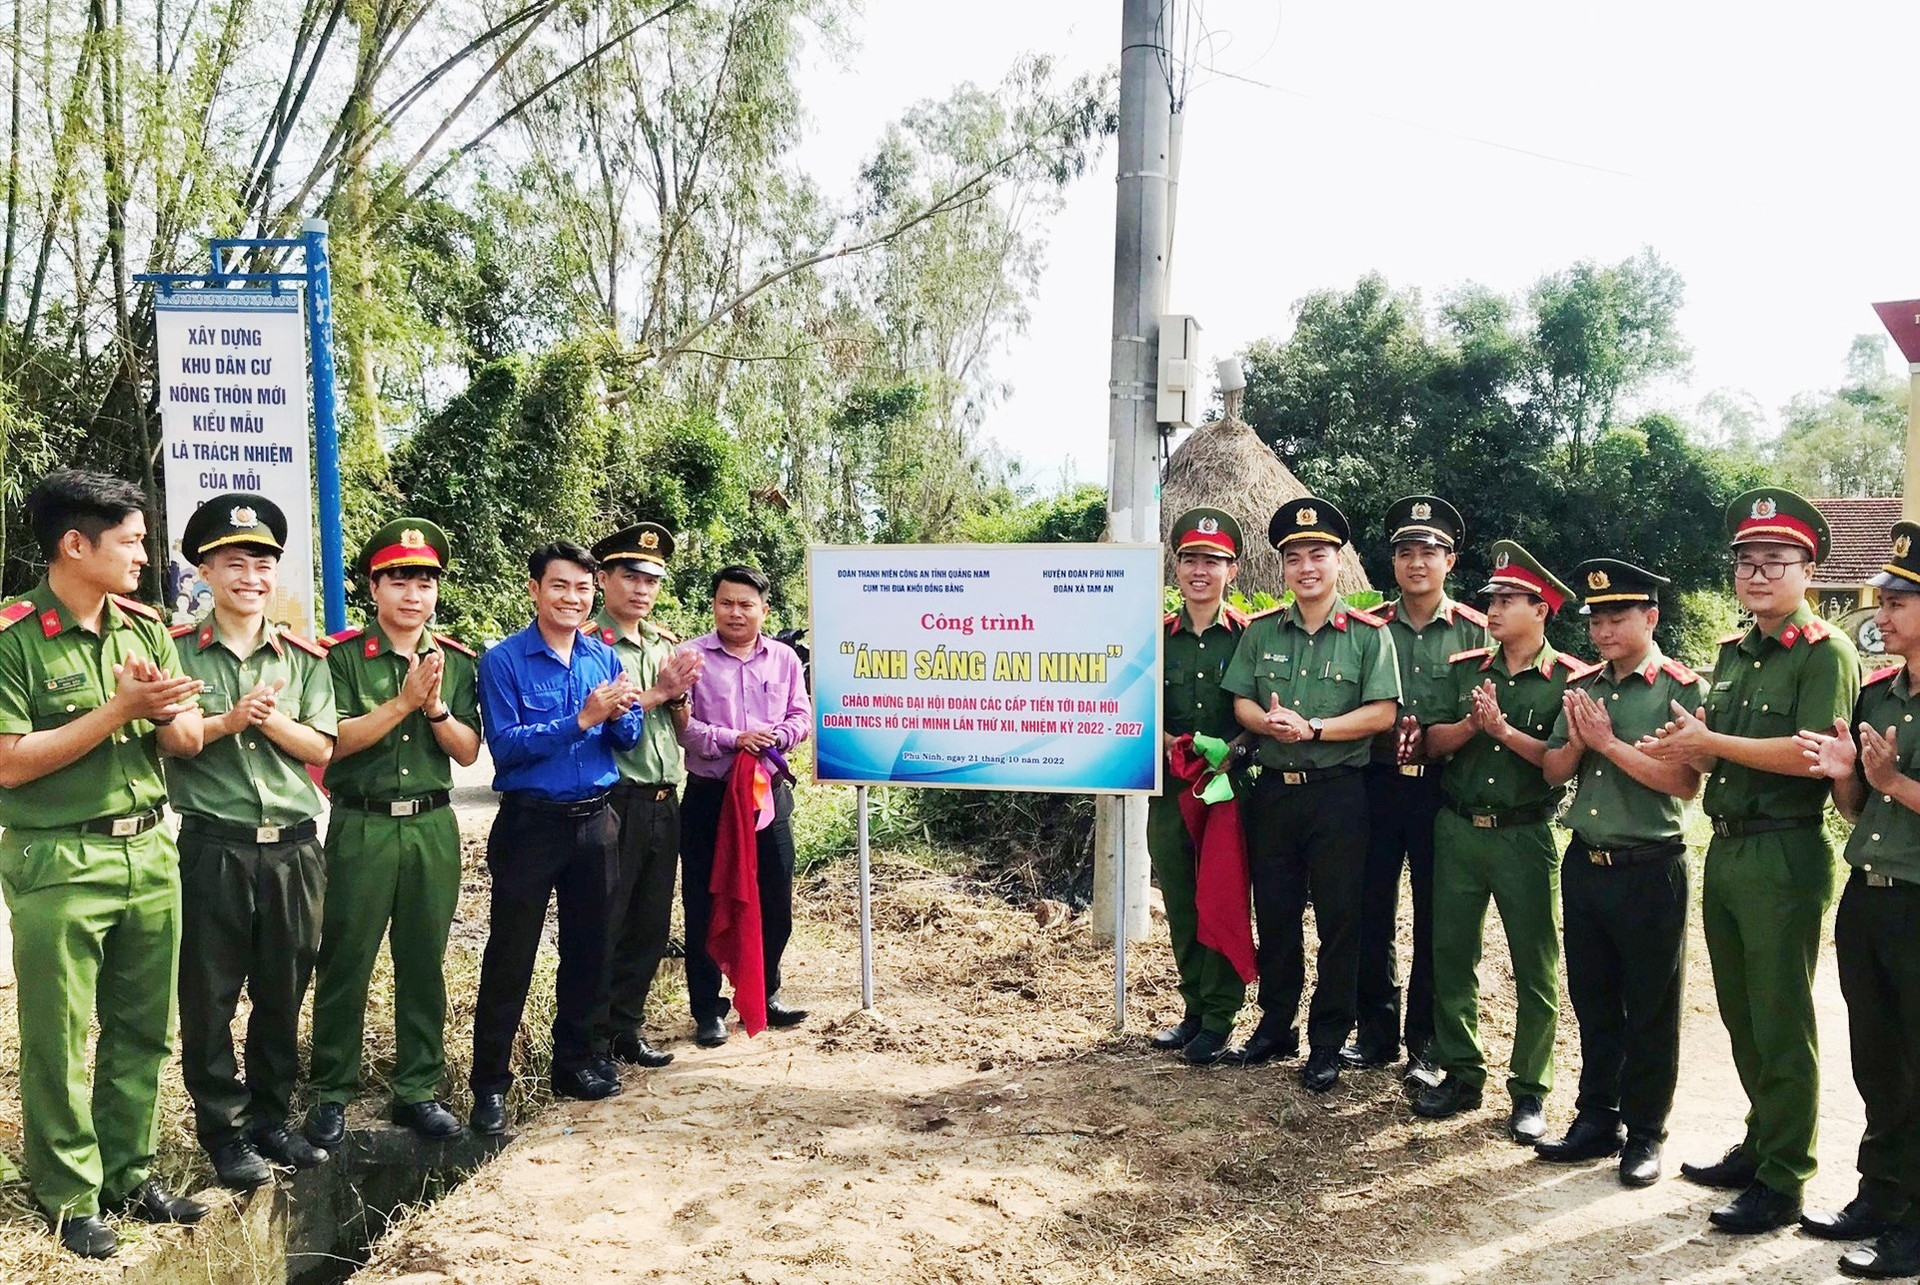 Trao tặng công trình “Ánh sáng an ninh” cho người dân xã Tam An. Ảnh: Đoàn TN Công an Quảng Nam